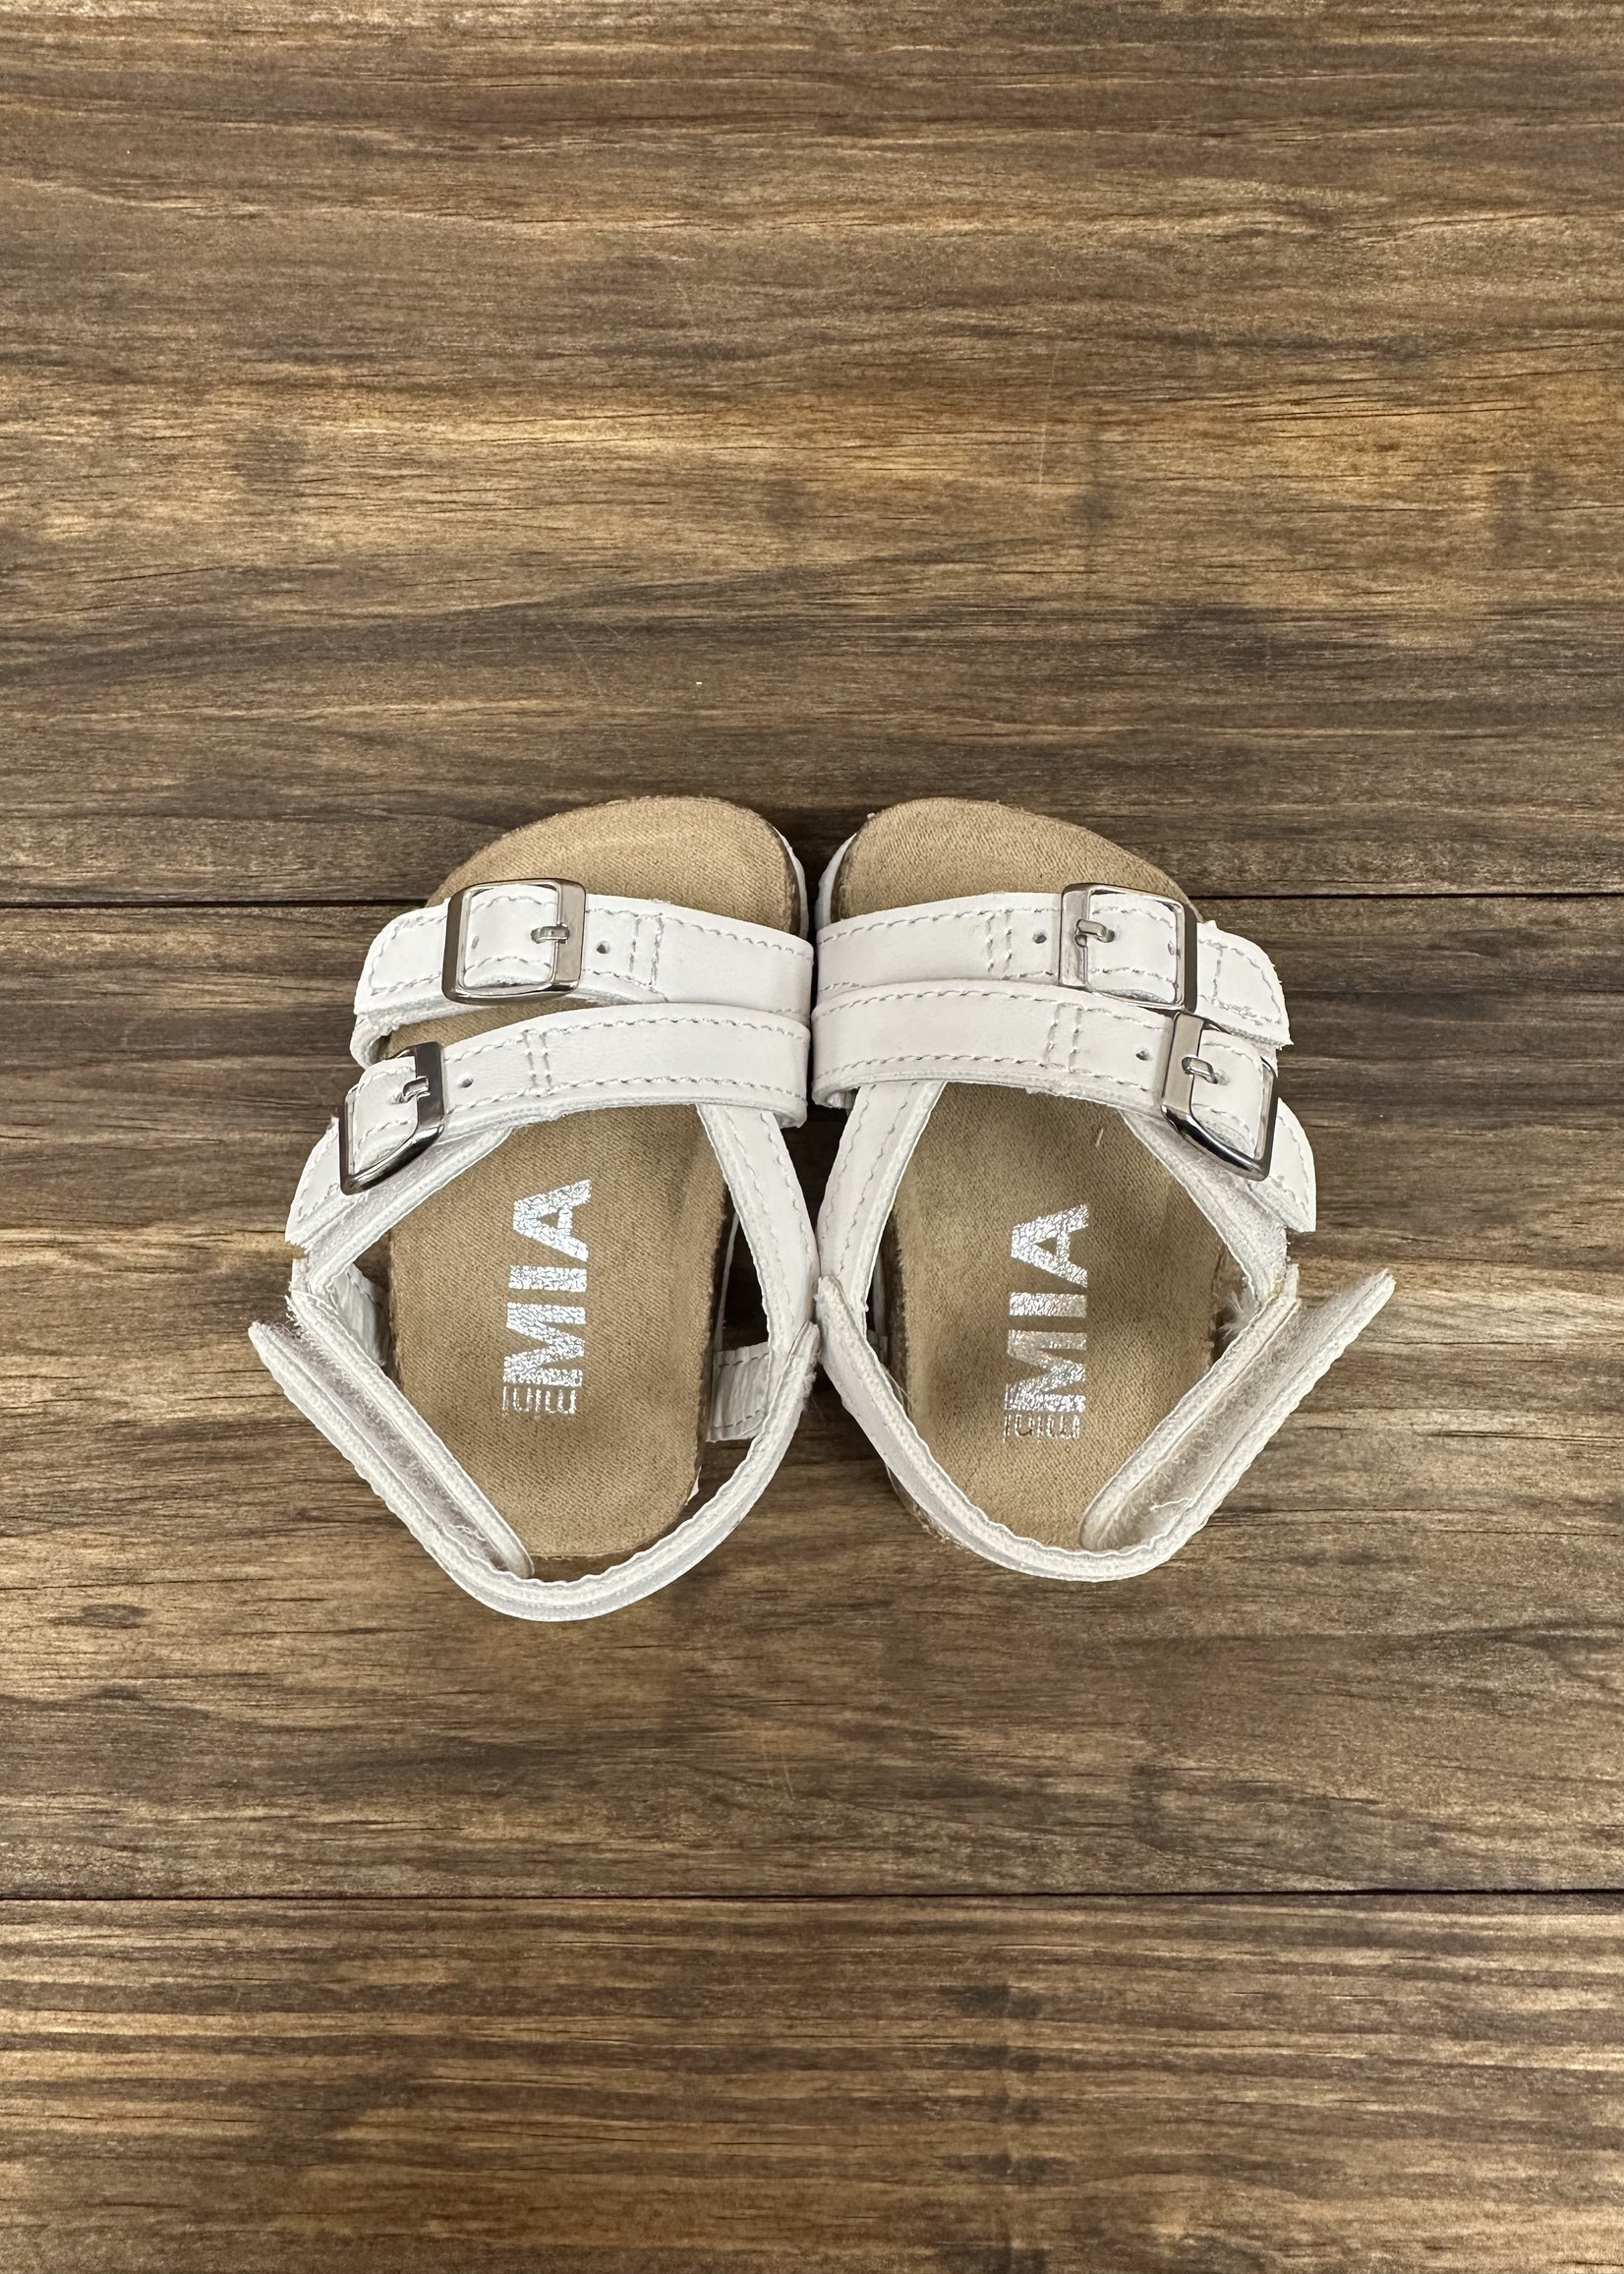 Little White Sandals- Baby Girl